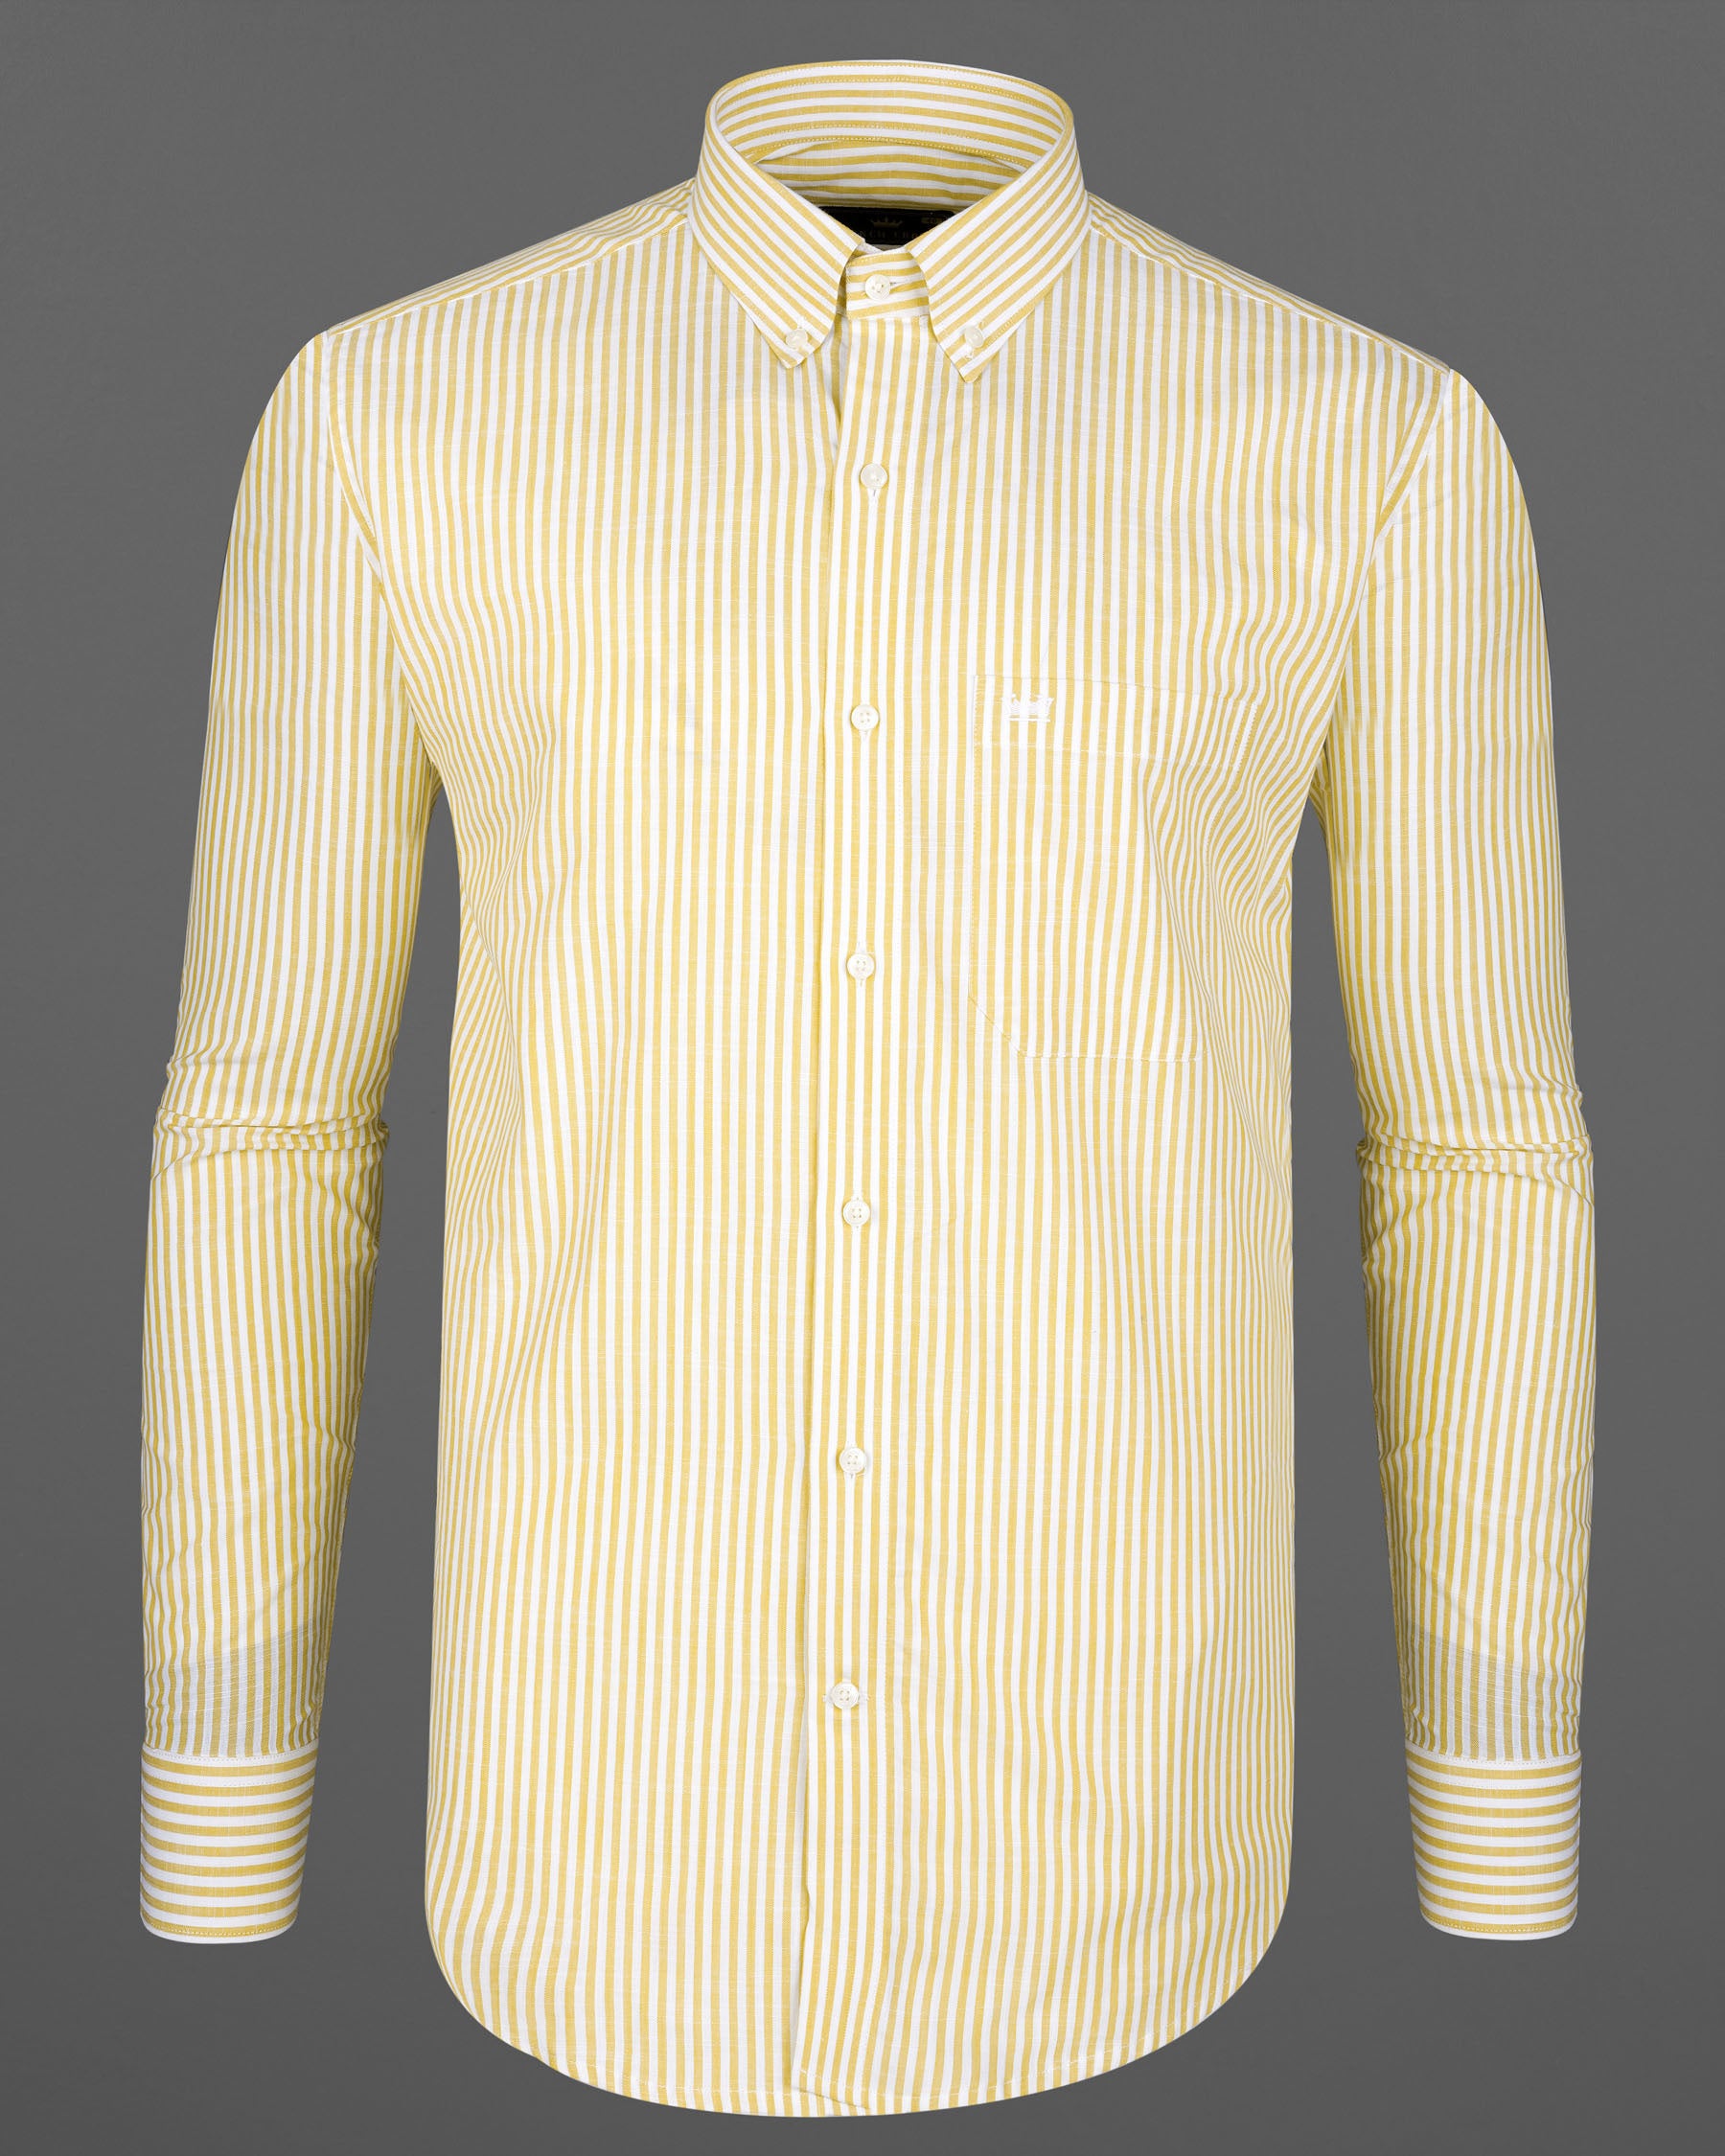 Light Mustard Yellow and White Striped Premium Cotton Shirt 7866-BD-38, 7866-BD-H-38, 7866-BD-39, 7866-BD-H-39, 7866-BD-40, 7866-BD-H-40, 7866-BD-42, 7866-BD-H-42, 7866-BD-44, 7866-BD-H-44, 7866-BD-46, 7866-BD-H-46, 7866-BD-48, 7866-BD-H-48, 7866-BD-50, 7866-BD-H-50, 7866-BD-52, 7866-BD-H-52